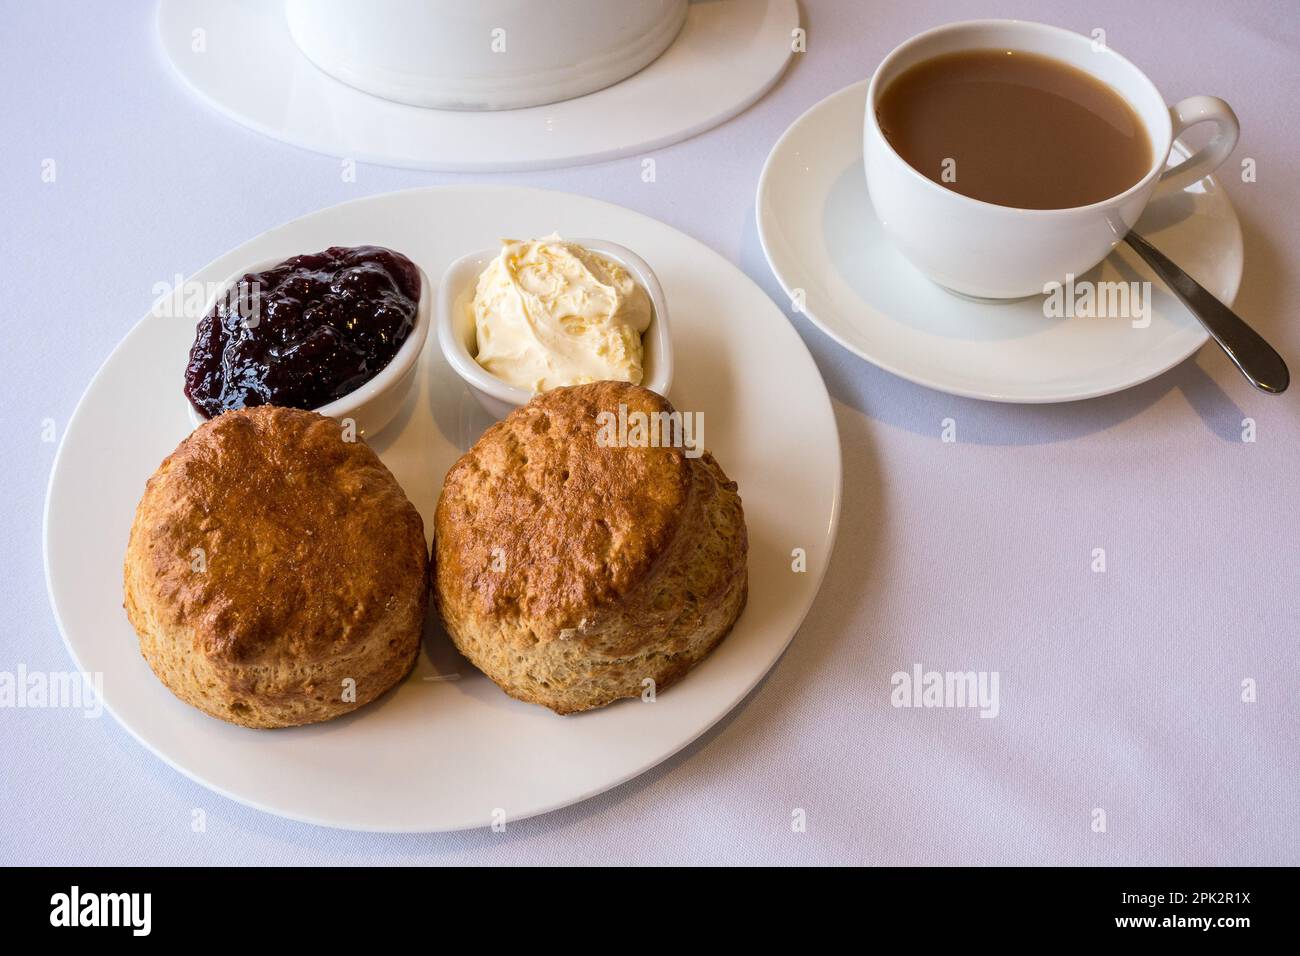 Cream Tea mit zwei frisch gebackenen einfachen Scones mit Geschirr aus Clotted Cream und Marmelade sowie einer Tasse Tee, serviert auf sauberem weißem Geschirr und Tischdecke. Stockfoto